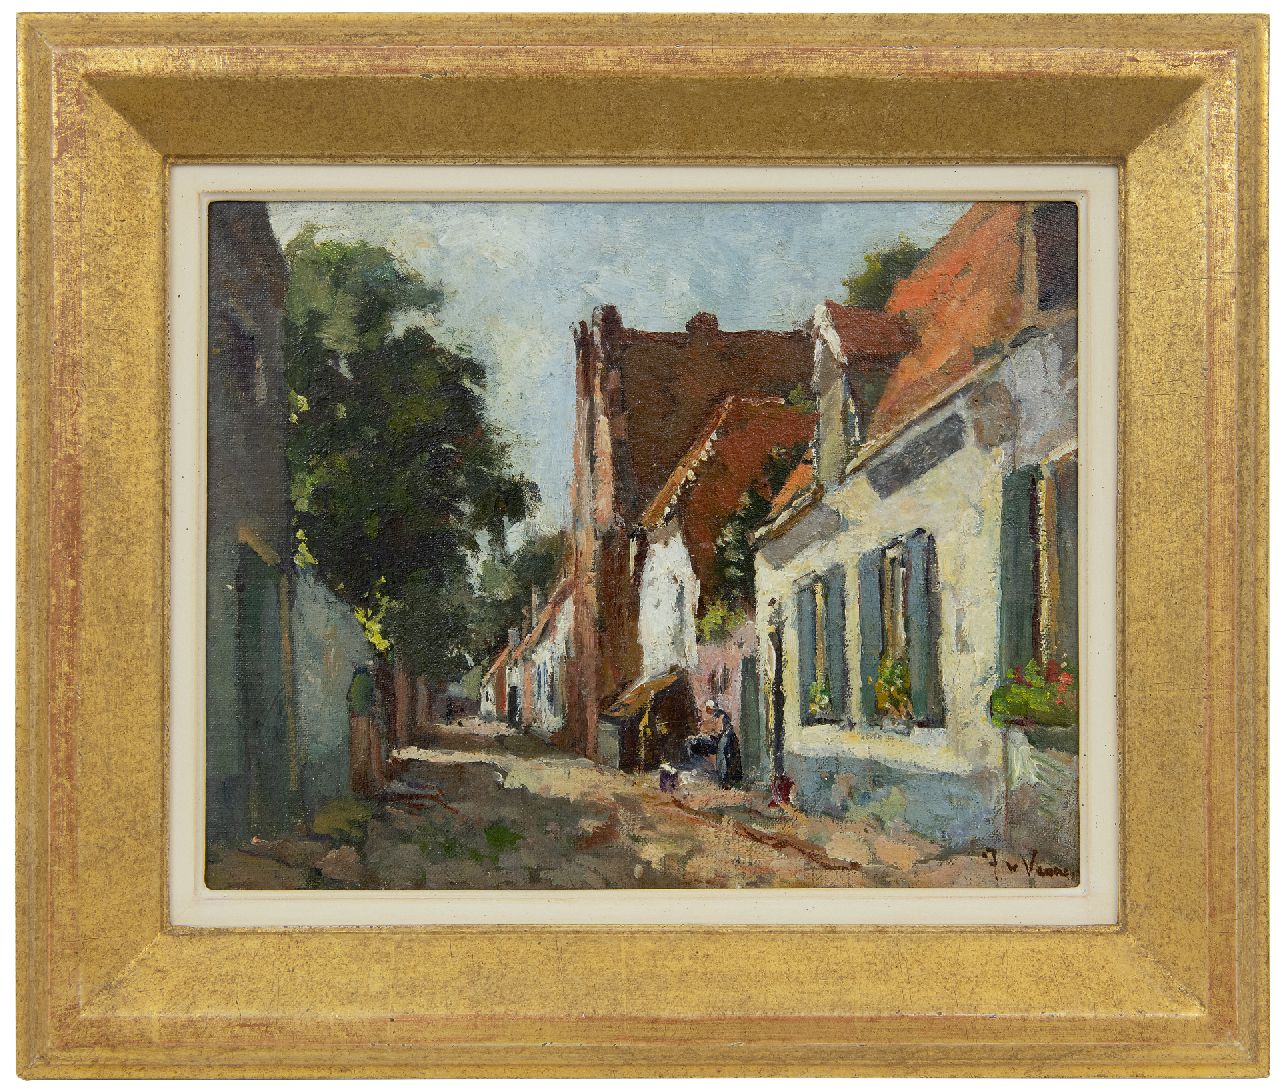 Vuuren J. van | Jan van Vuuren | Paintings offered for sale | Village street in Elburg, oil on canvas 24.0 x 30.1 cm, signed l.r.